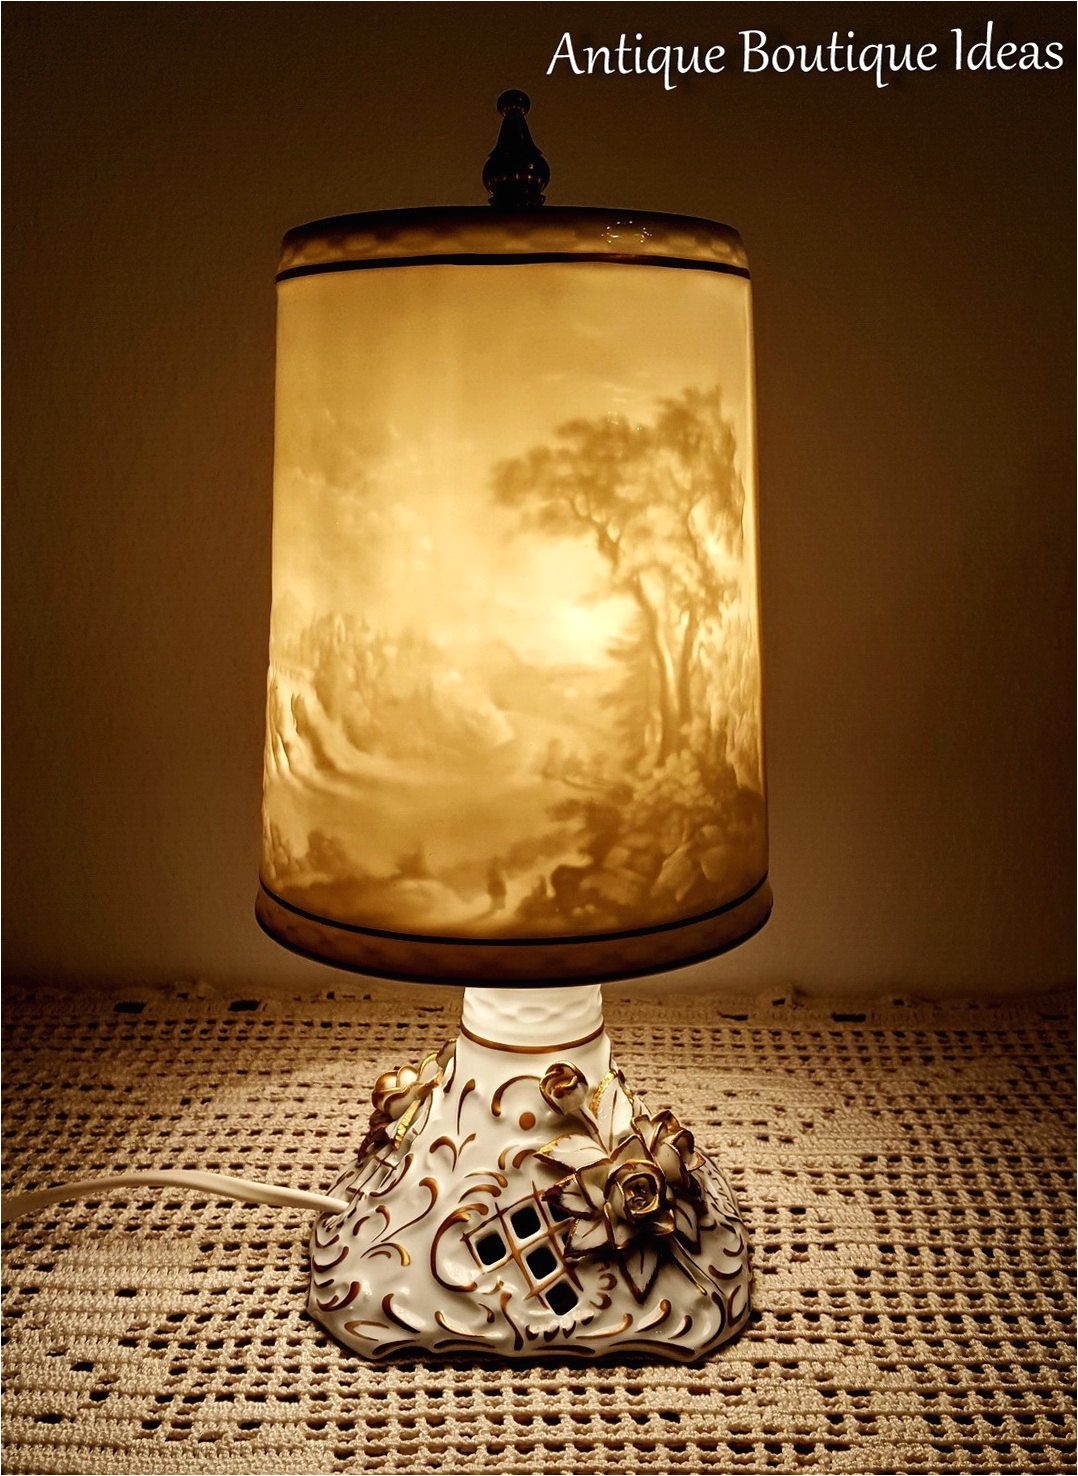 unique vintage lithophane lamp bedside table lamp vintage plaue lithophanie shades german porcelain by antiqueboutiqueideas on